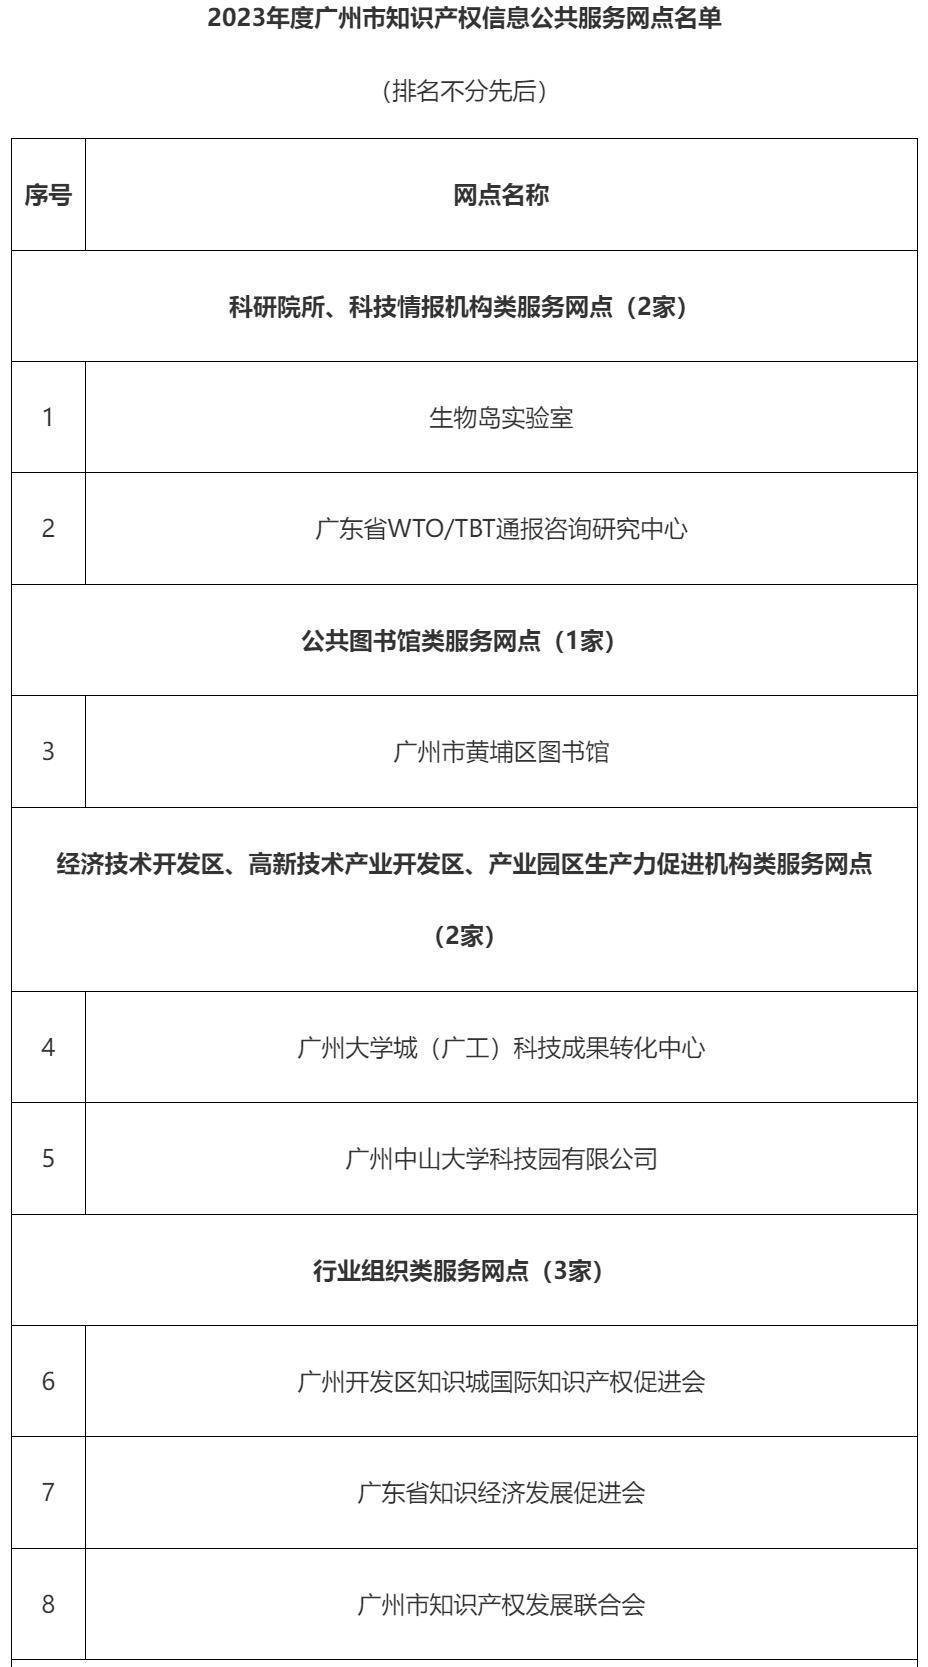 广州已有60家市级知识产权信息公共服务网点 这项认定快来申报